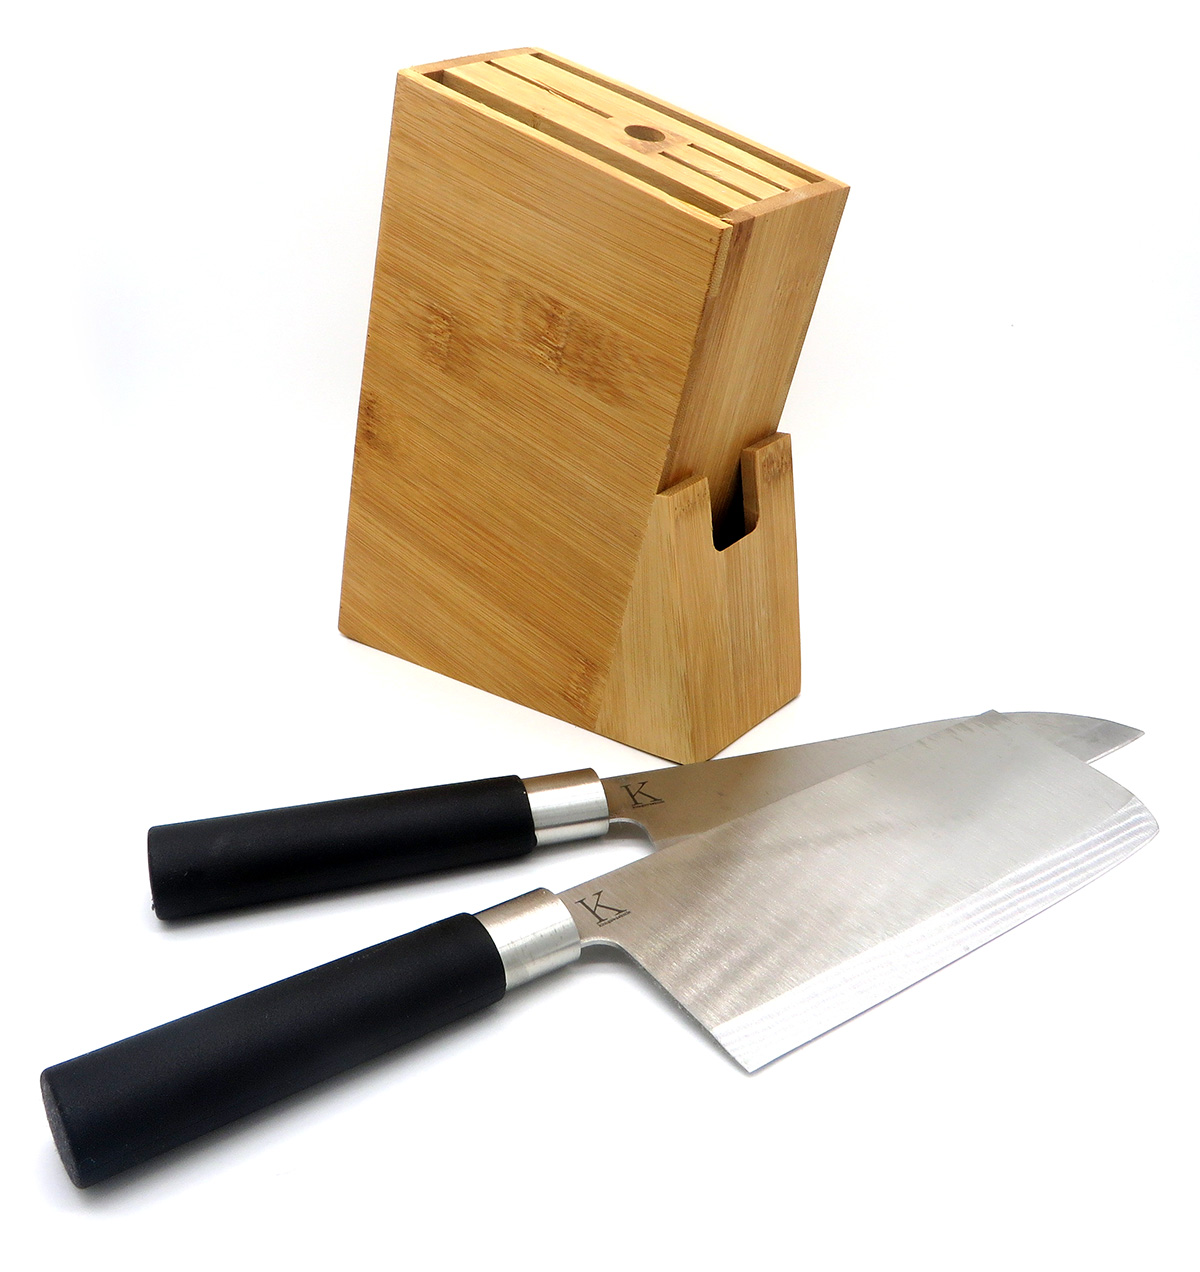 Centro Dollar 123 - Organizador de cuchillos 😉😲 a solo B/.2.99 c/u👍  Herramientas de cocina Soporte de plástico para cuchillos😁 ✓Departamento  de hogar✓ . . Para pedidos por WhatsApp estos son nuestros